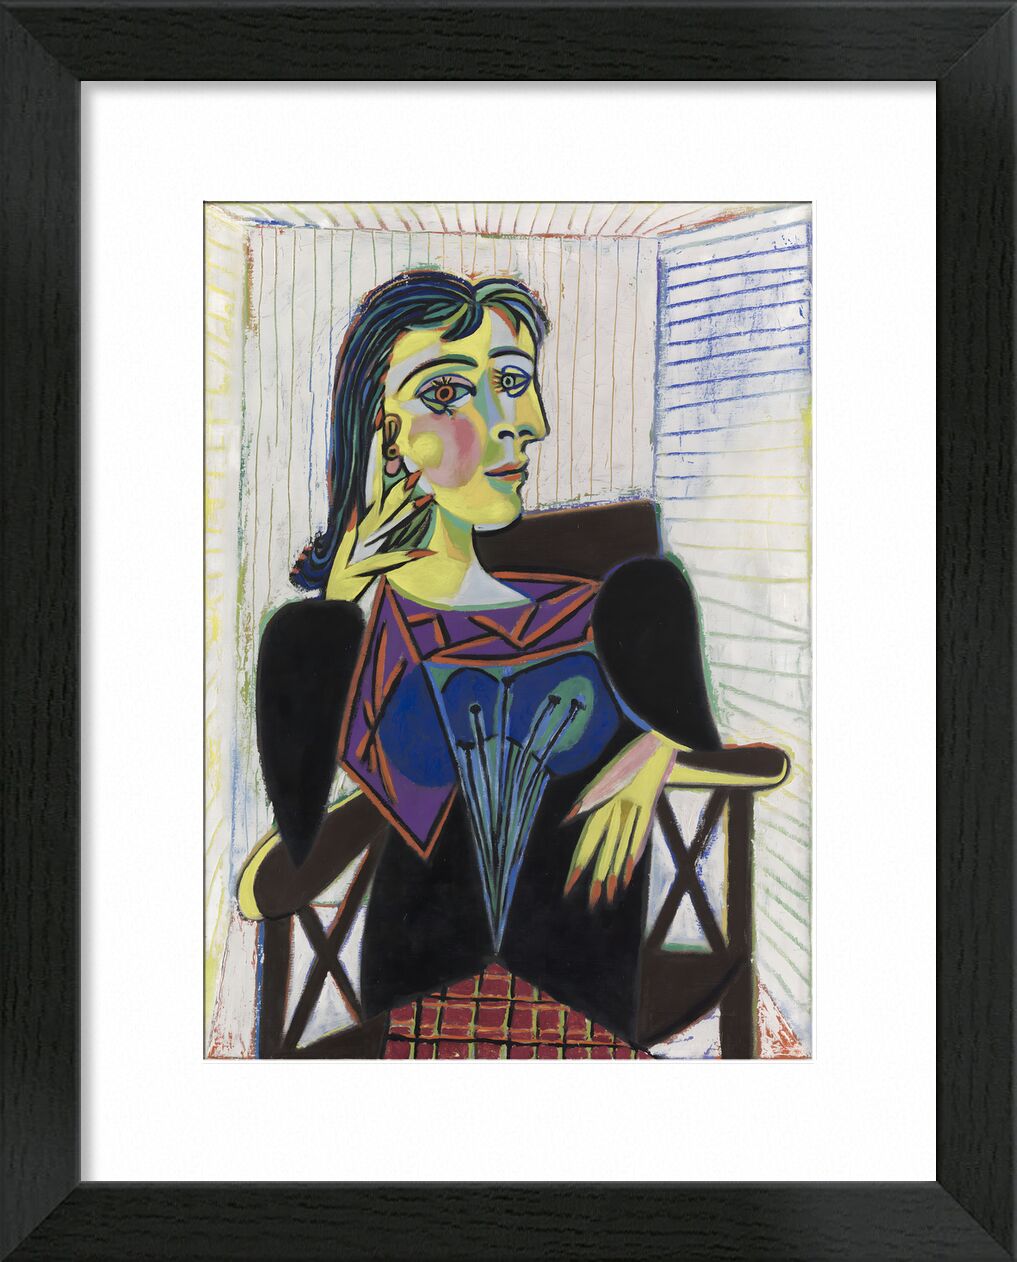 Portrait of Dora Maar - Picasso von Bildende Kunst, Prodi Art, Porträt, Malerei, Picasso